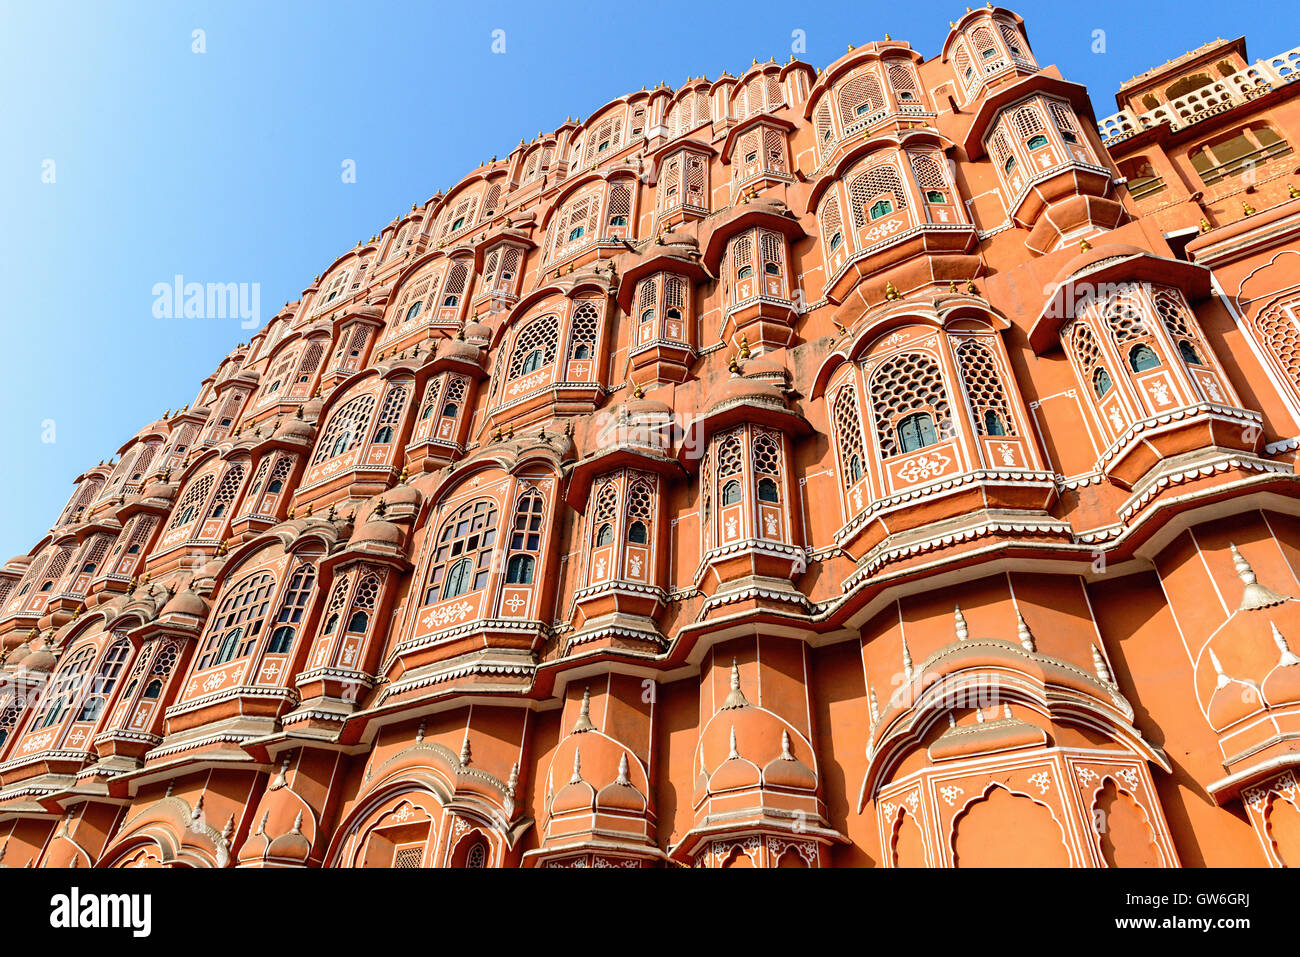 Hawa Mahal - Palace of the Winds, Jaipur, Rajasthan, India Stock Photo